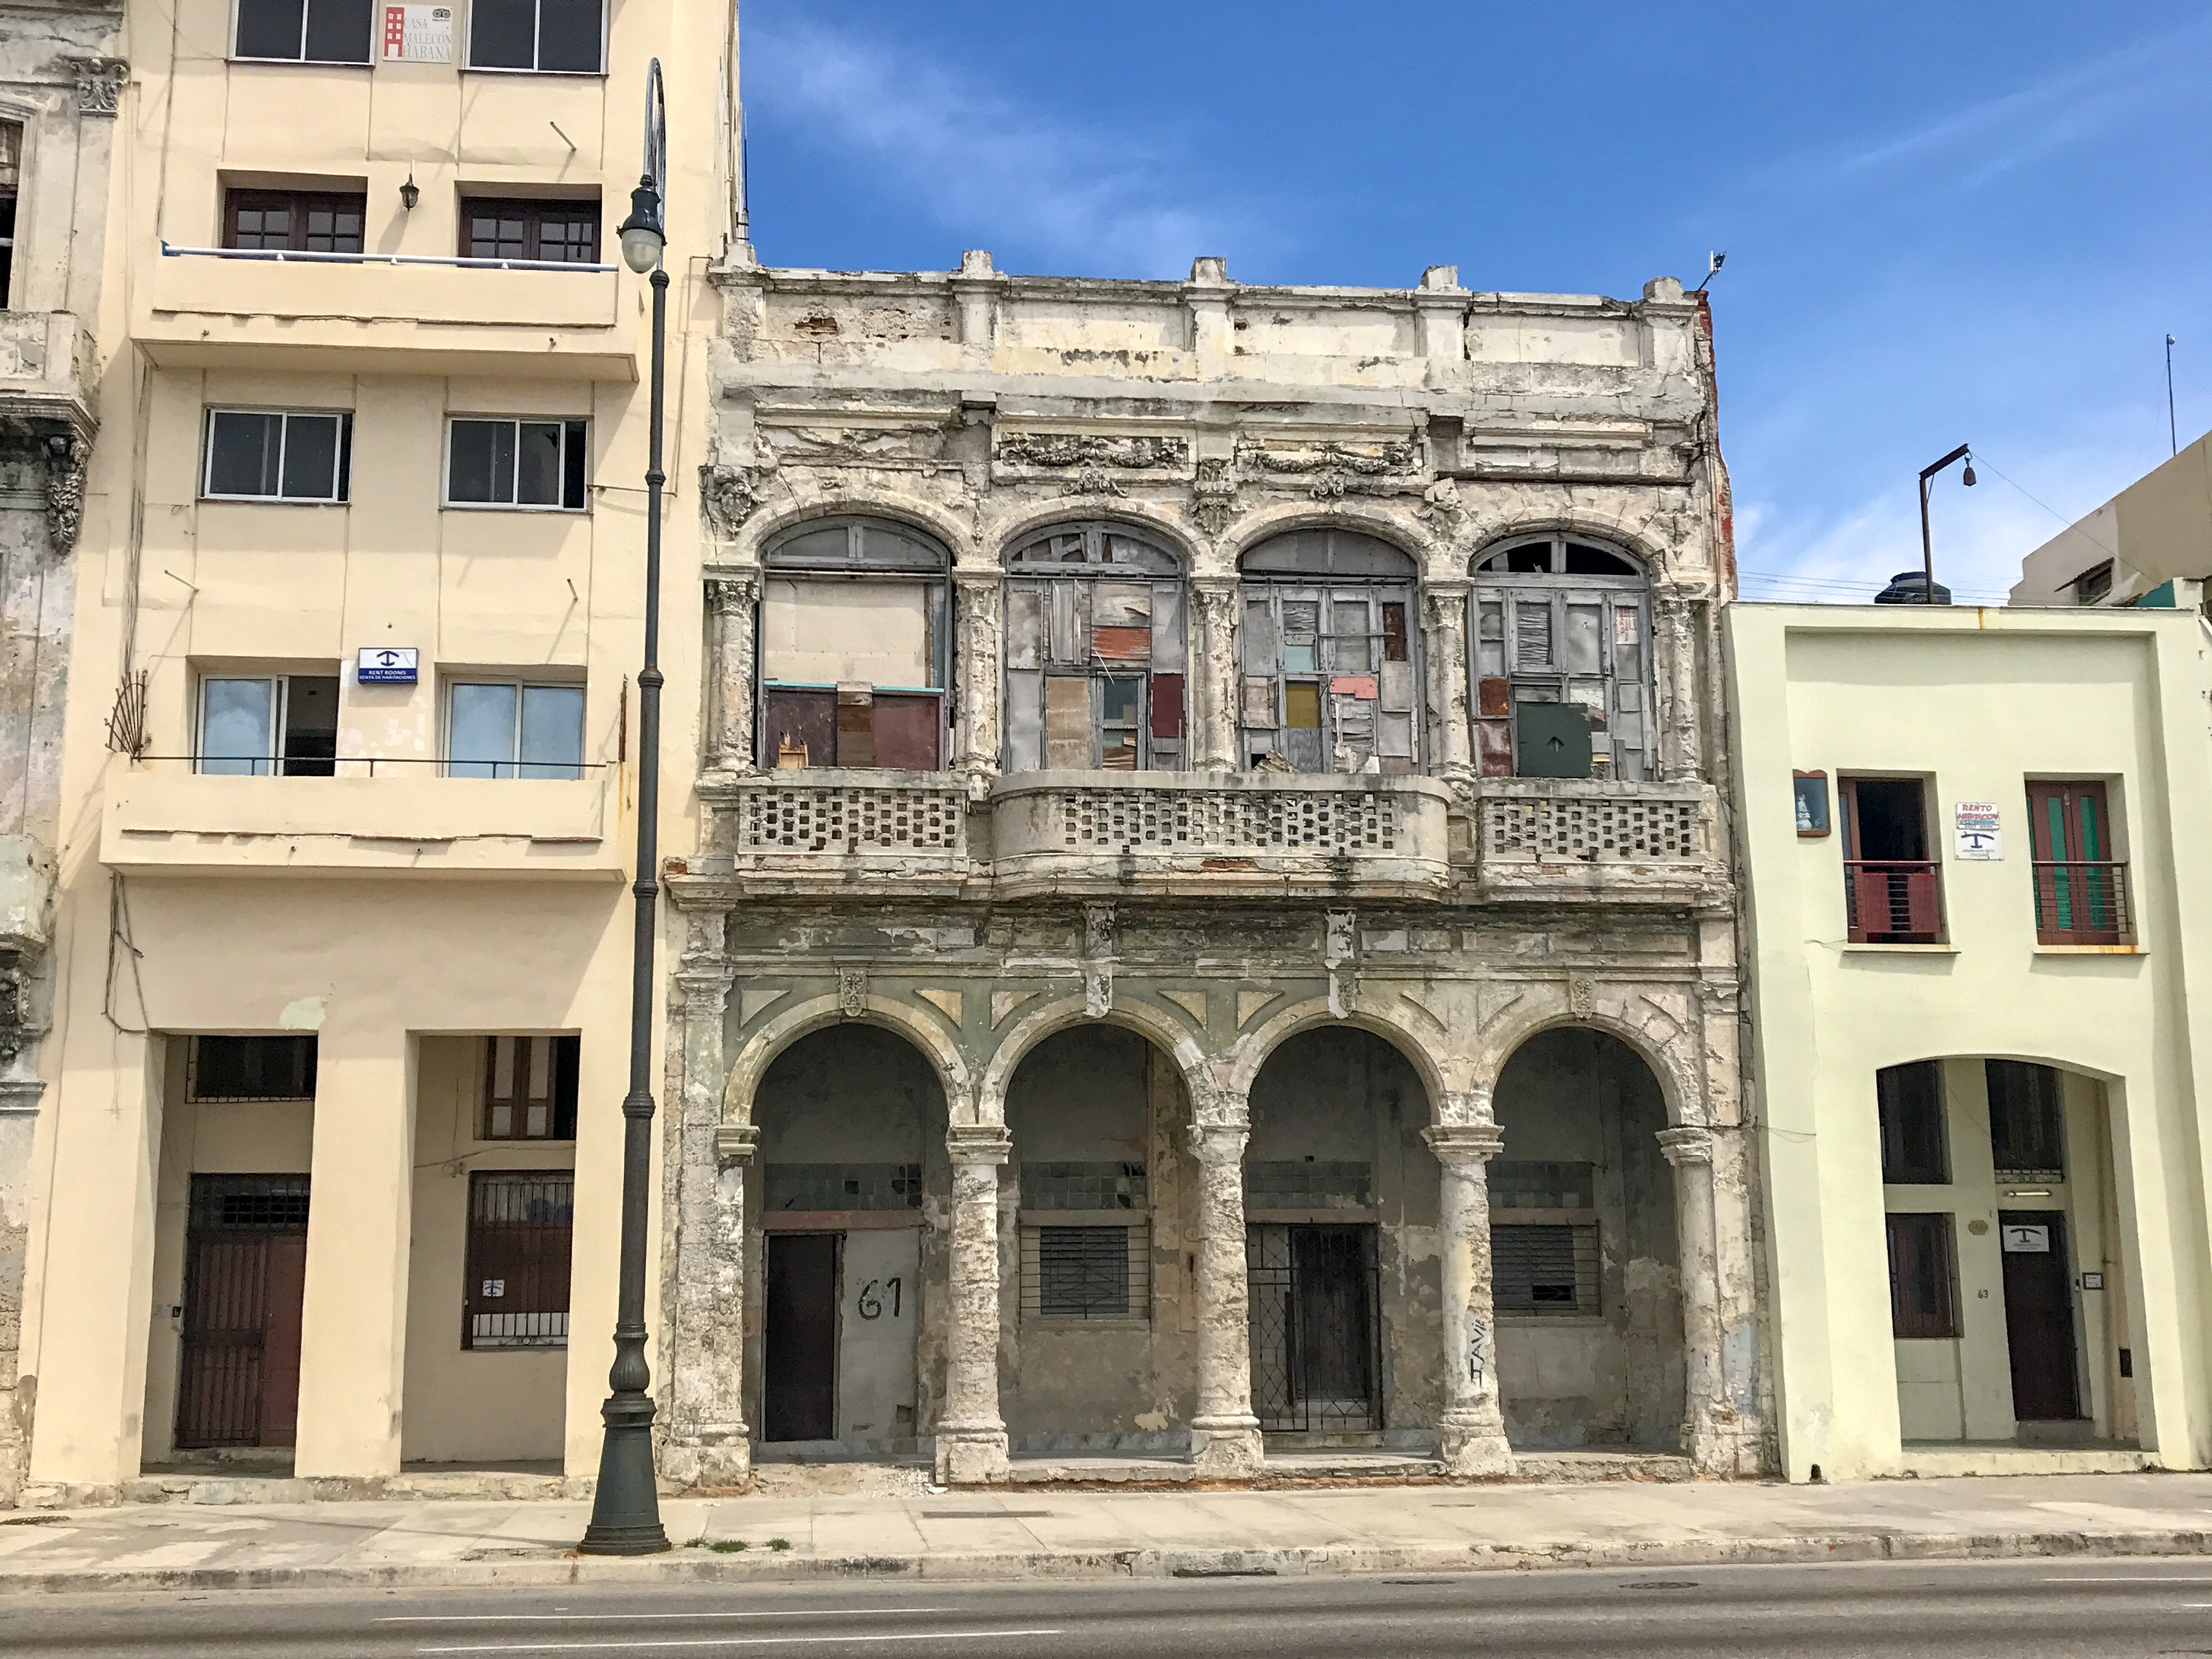 Building in Havana, Cuba